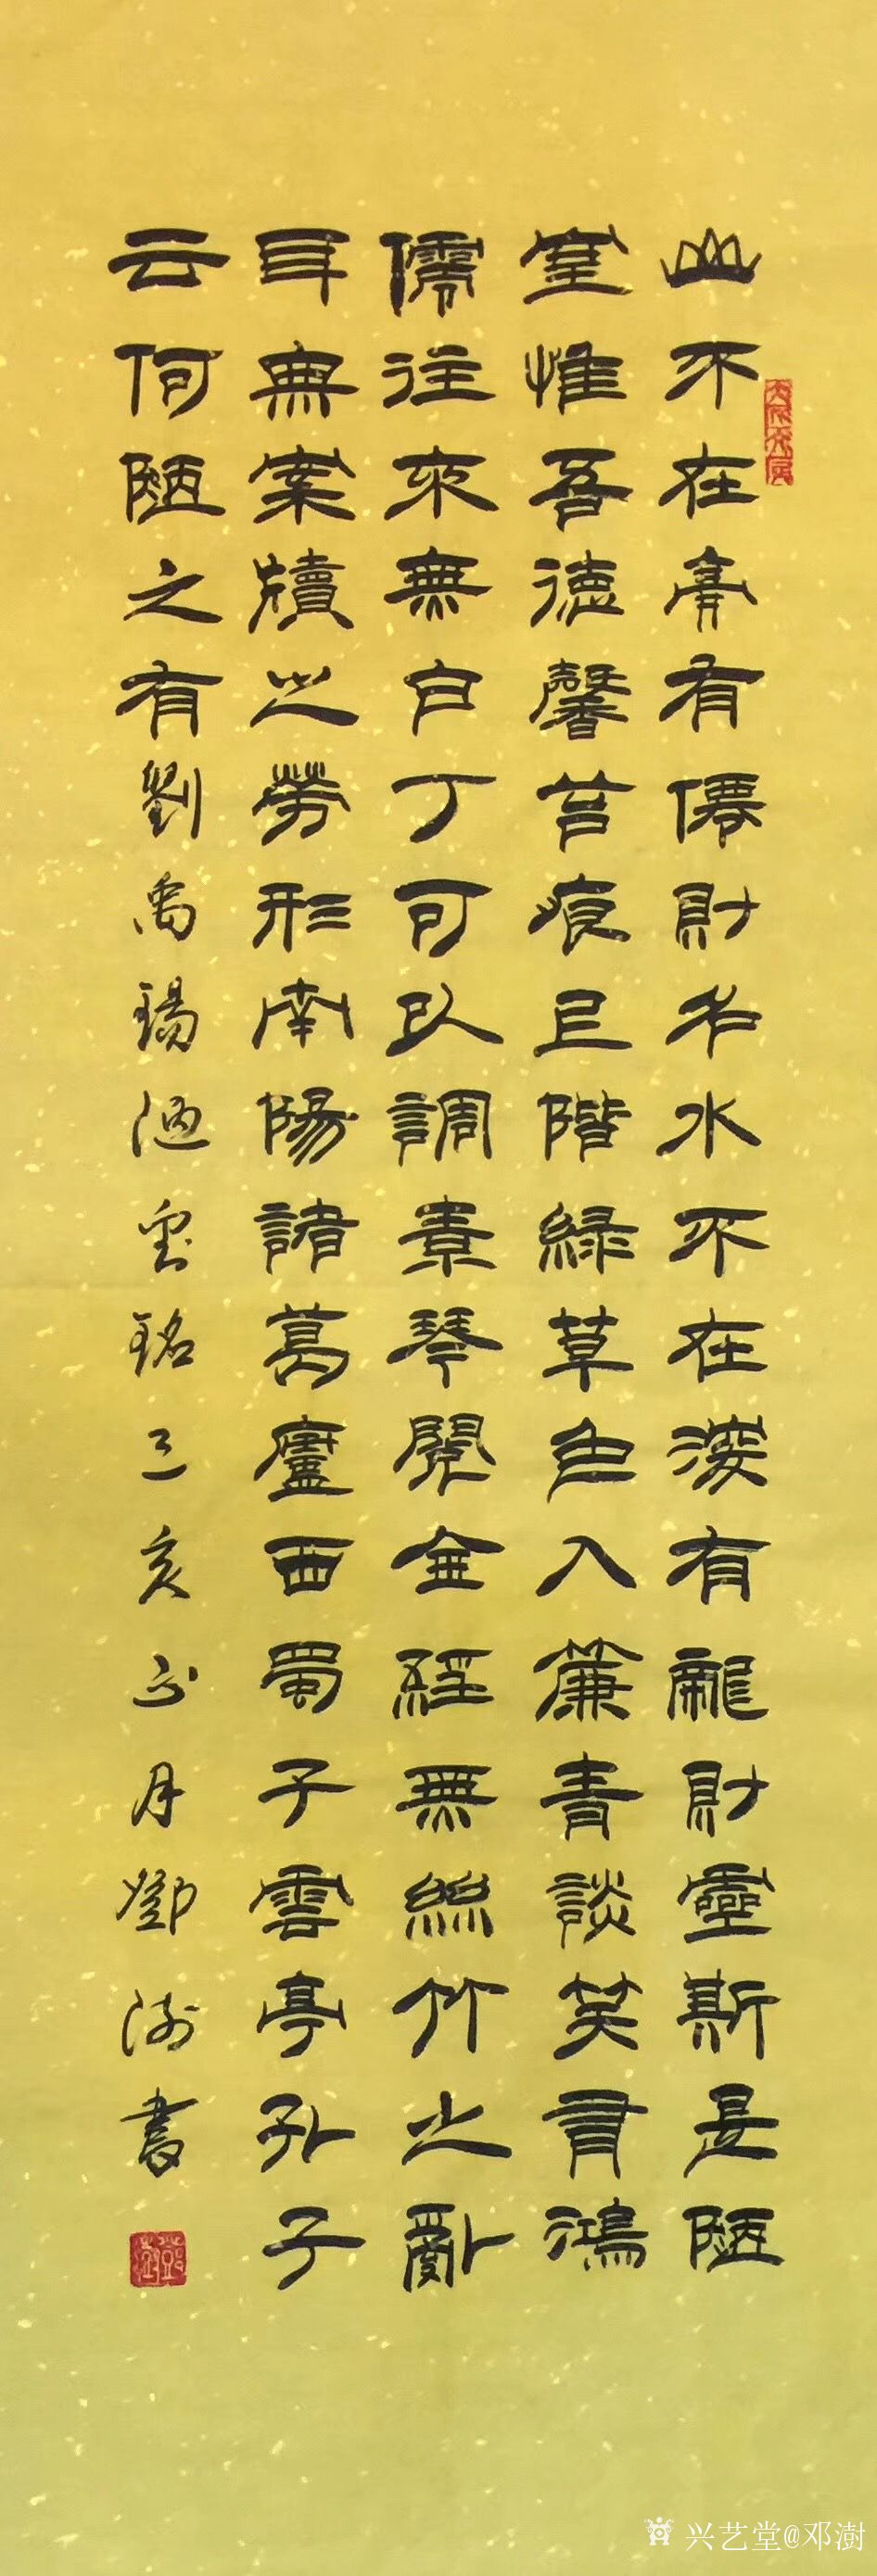 艺术家邓澍日记:好友订制的《陋室铭》隶书书法作品,写了4种形式供